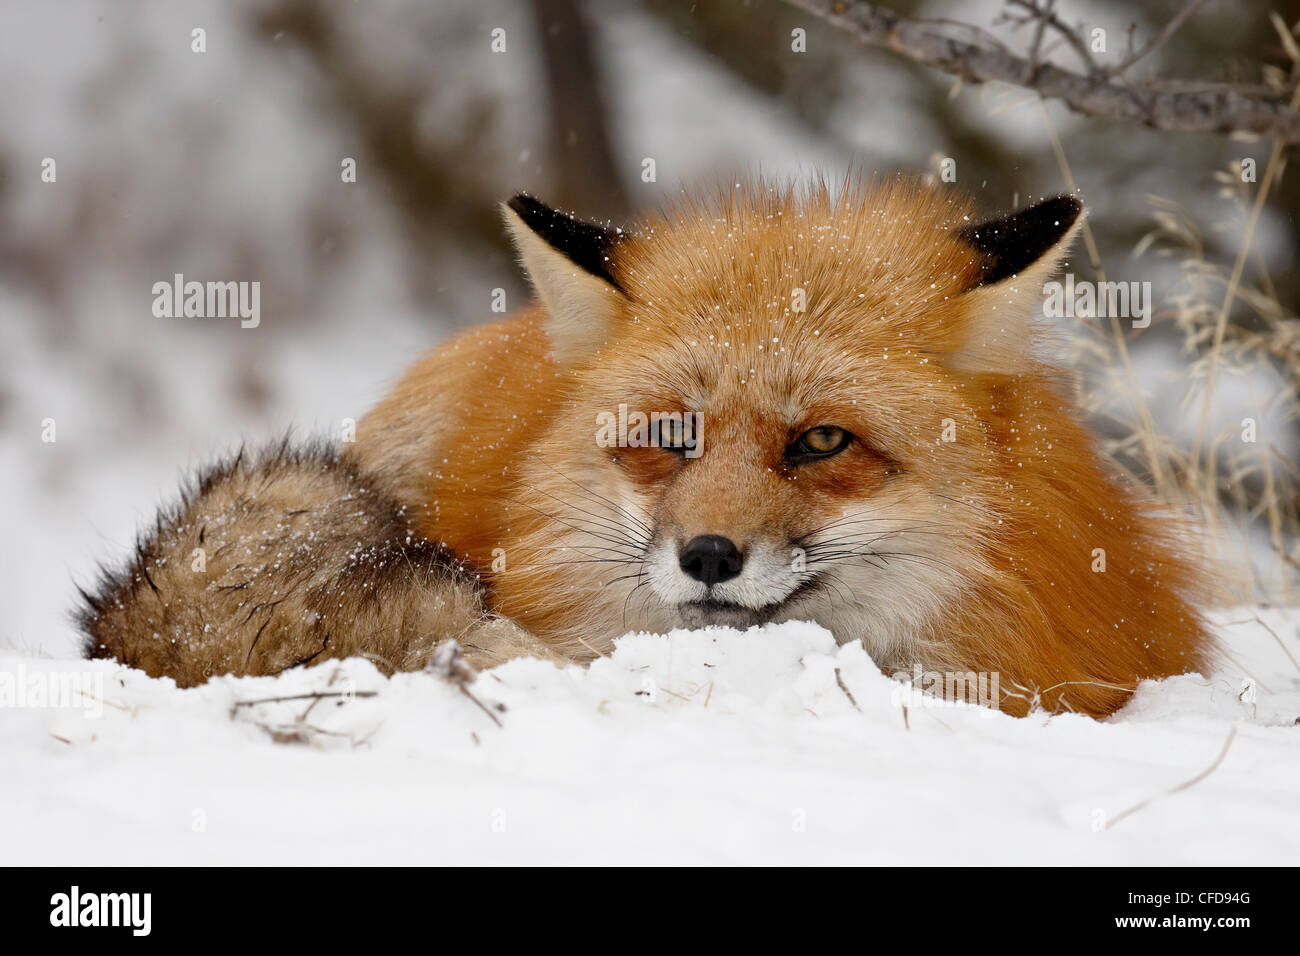 Rouge en captivité renard (Vulpes vulpes) dans la neige, près de Bozeman, Montana, États-Unis d'Amérique, Banque D'Images